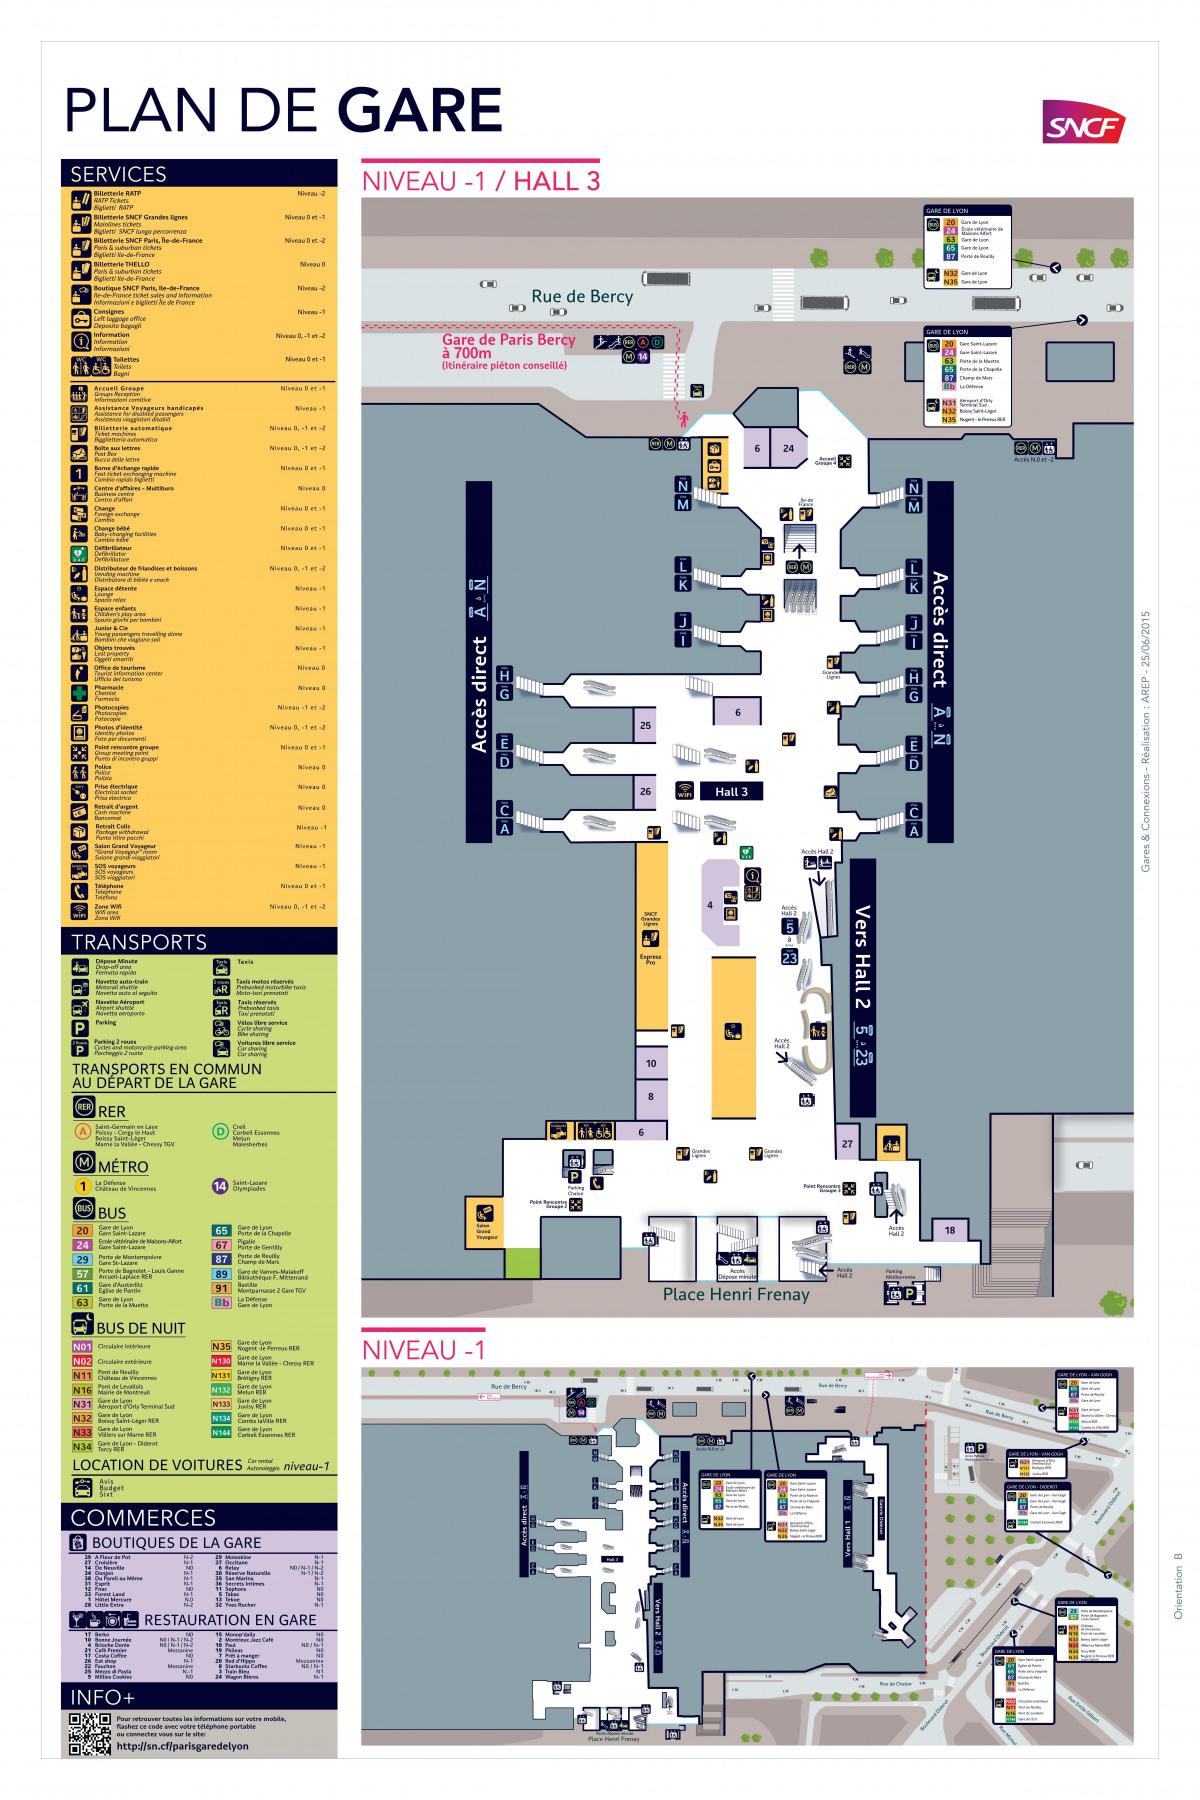 Peta dari Paris-Gare de Lyon Hall 3